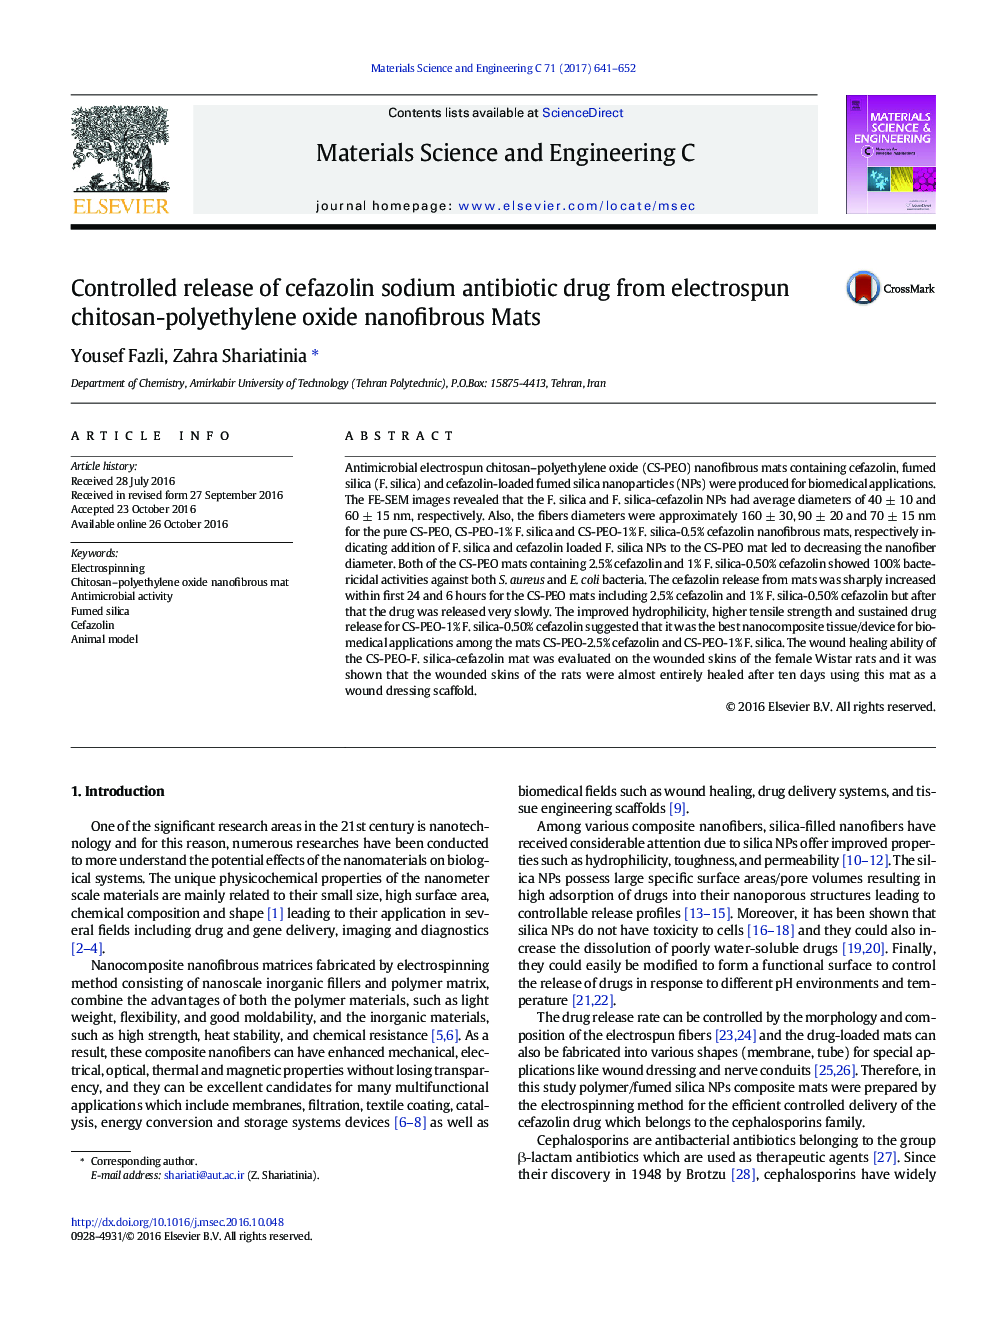 انتشار آنتی بیوتیک سفازولین سدیم کنترل شده از کپسول کیتوزان پلی اتیلن اکسید نانوفیبری 